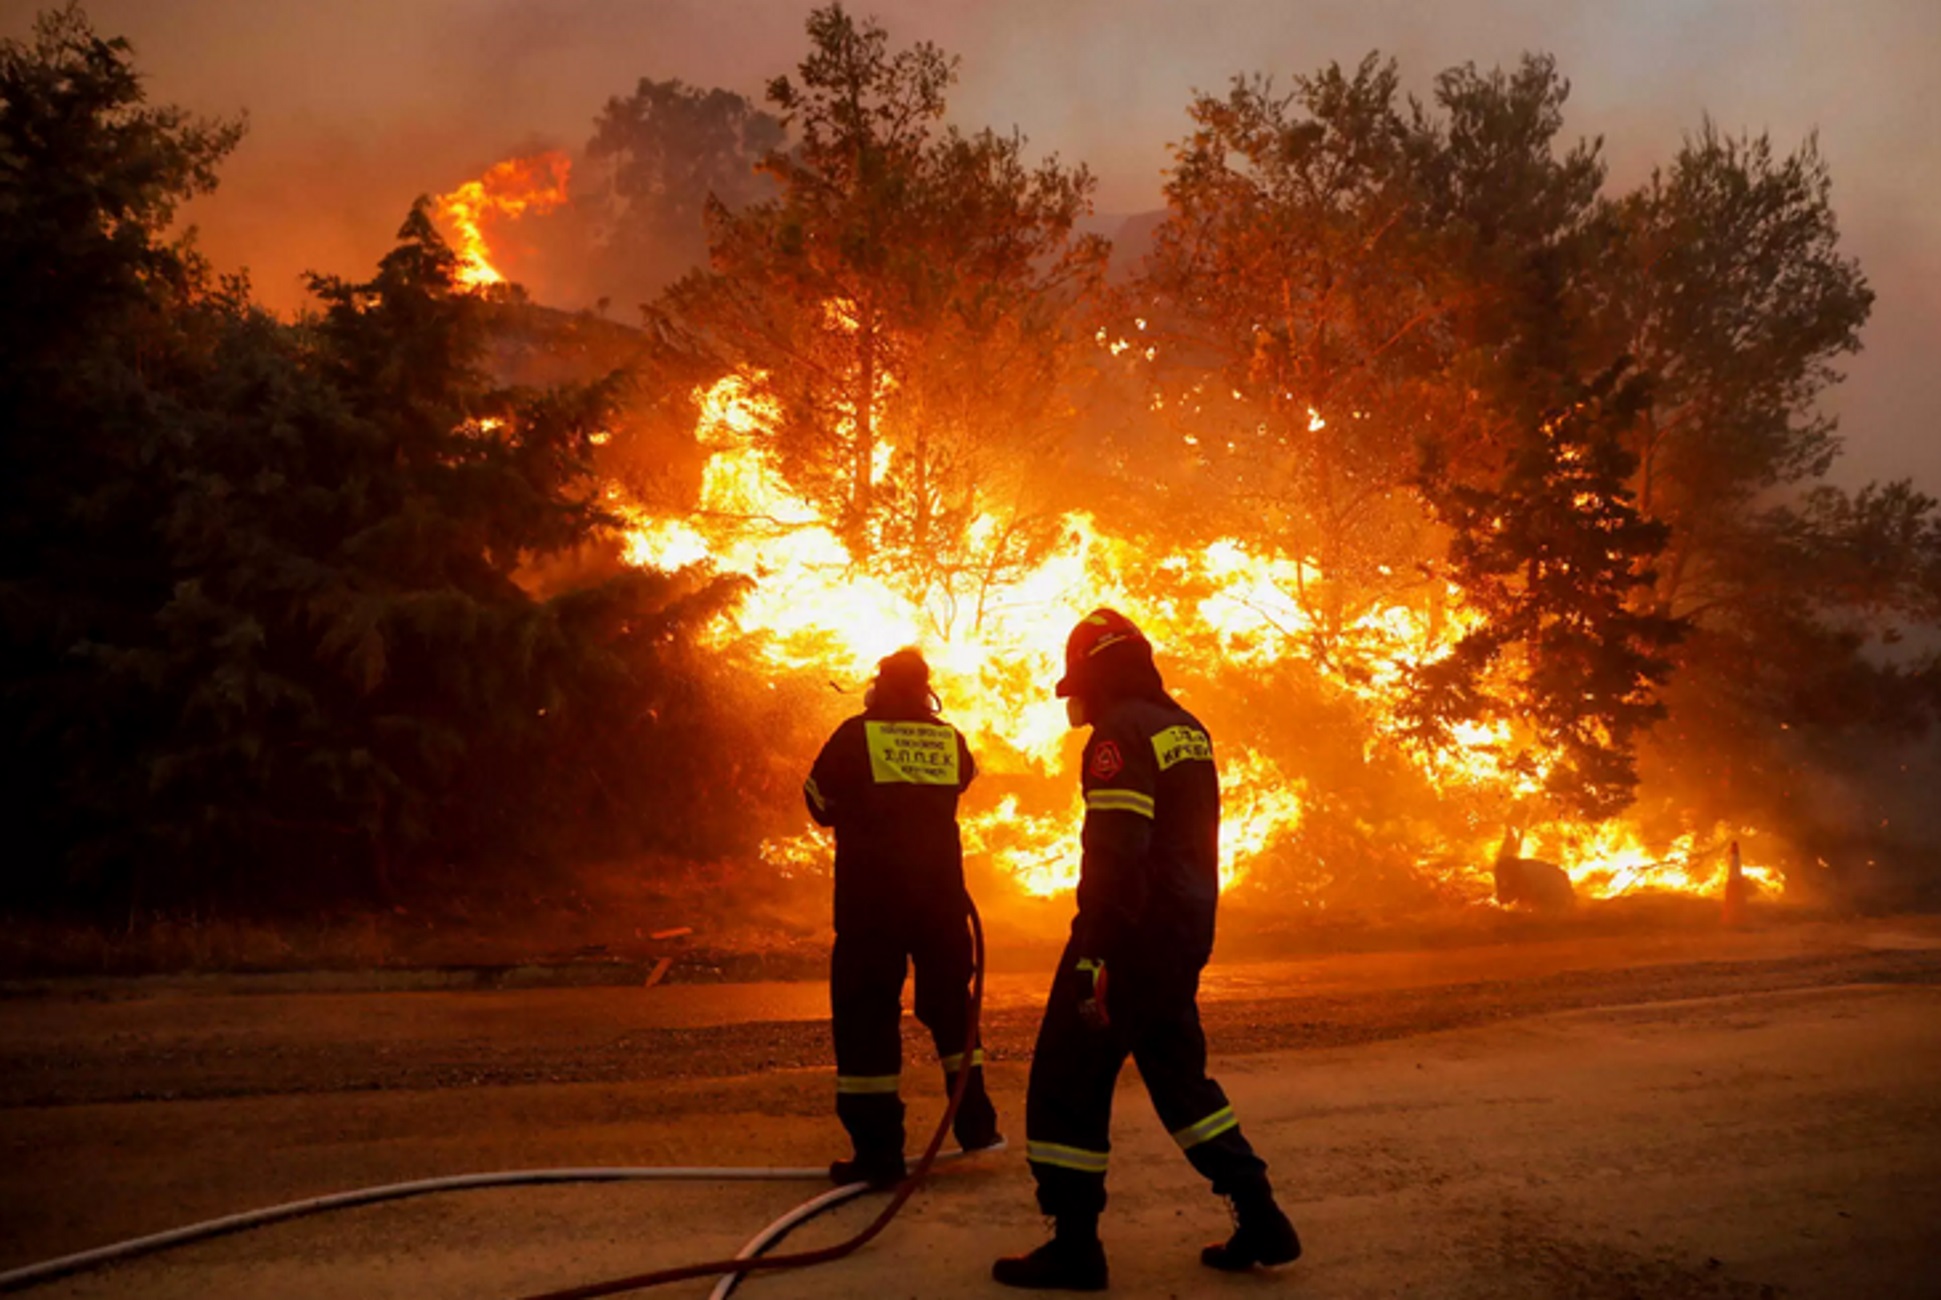 Ζευγολατιό Κορινθίας: Έσβησε η φωτιά και ξεκίνησαν τα δρομολόγια του Προαστιακού